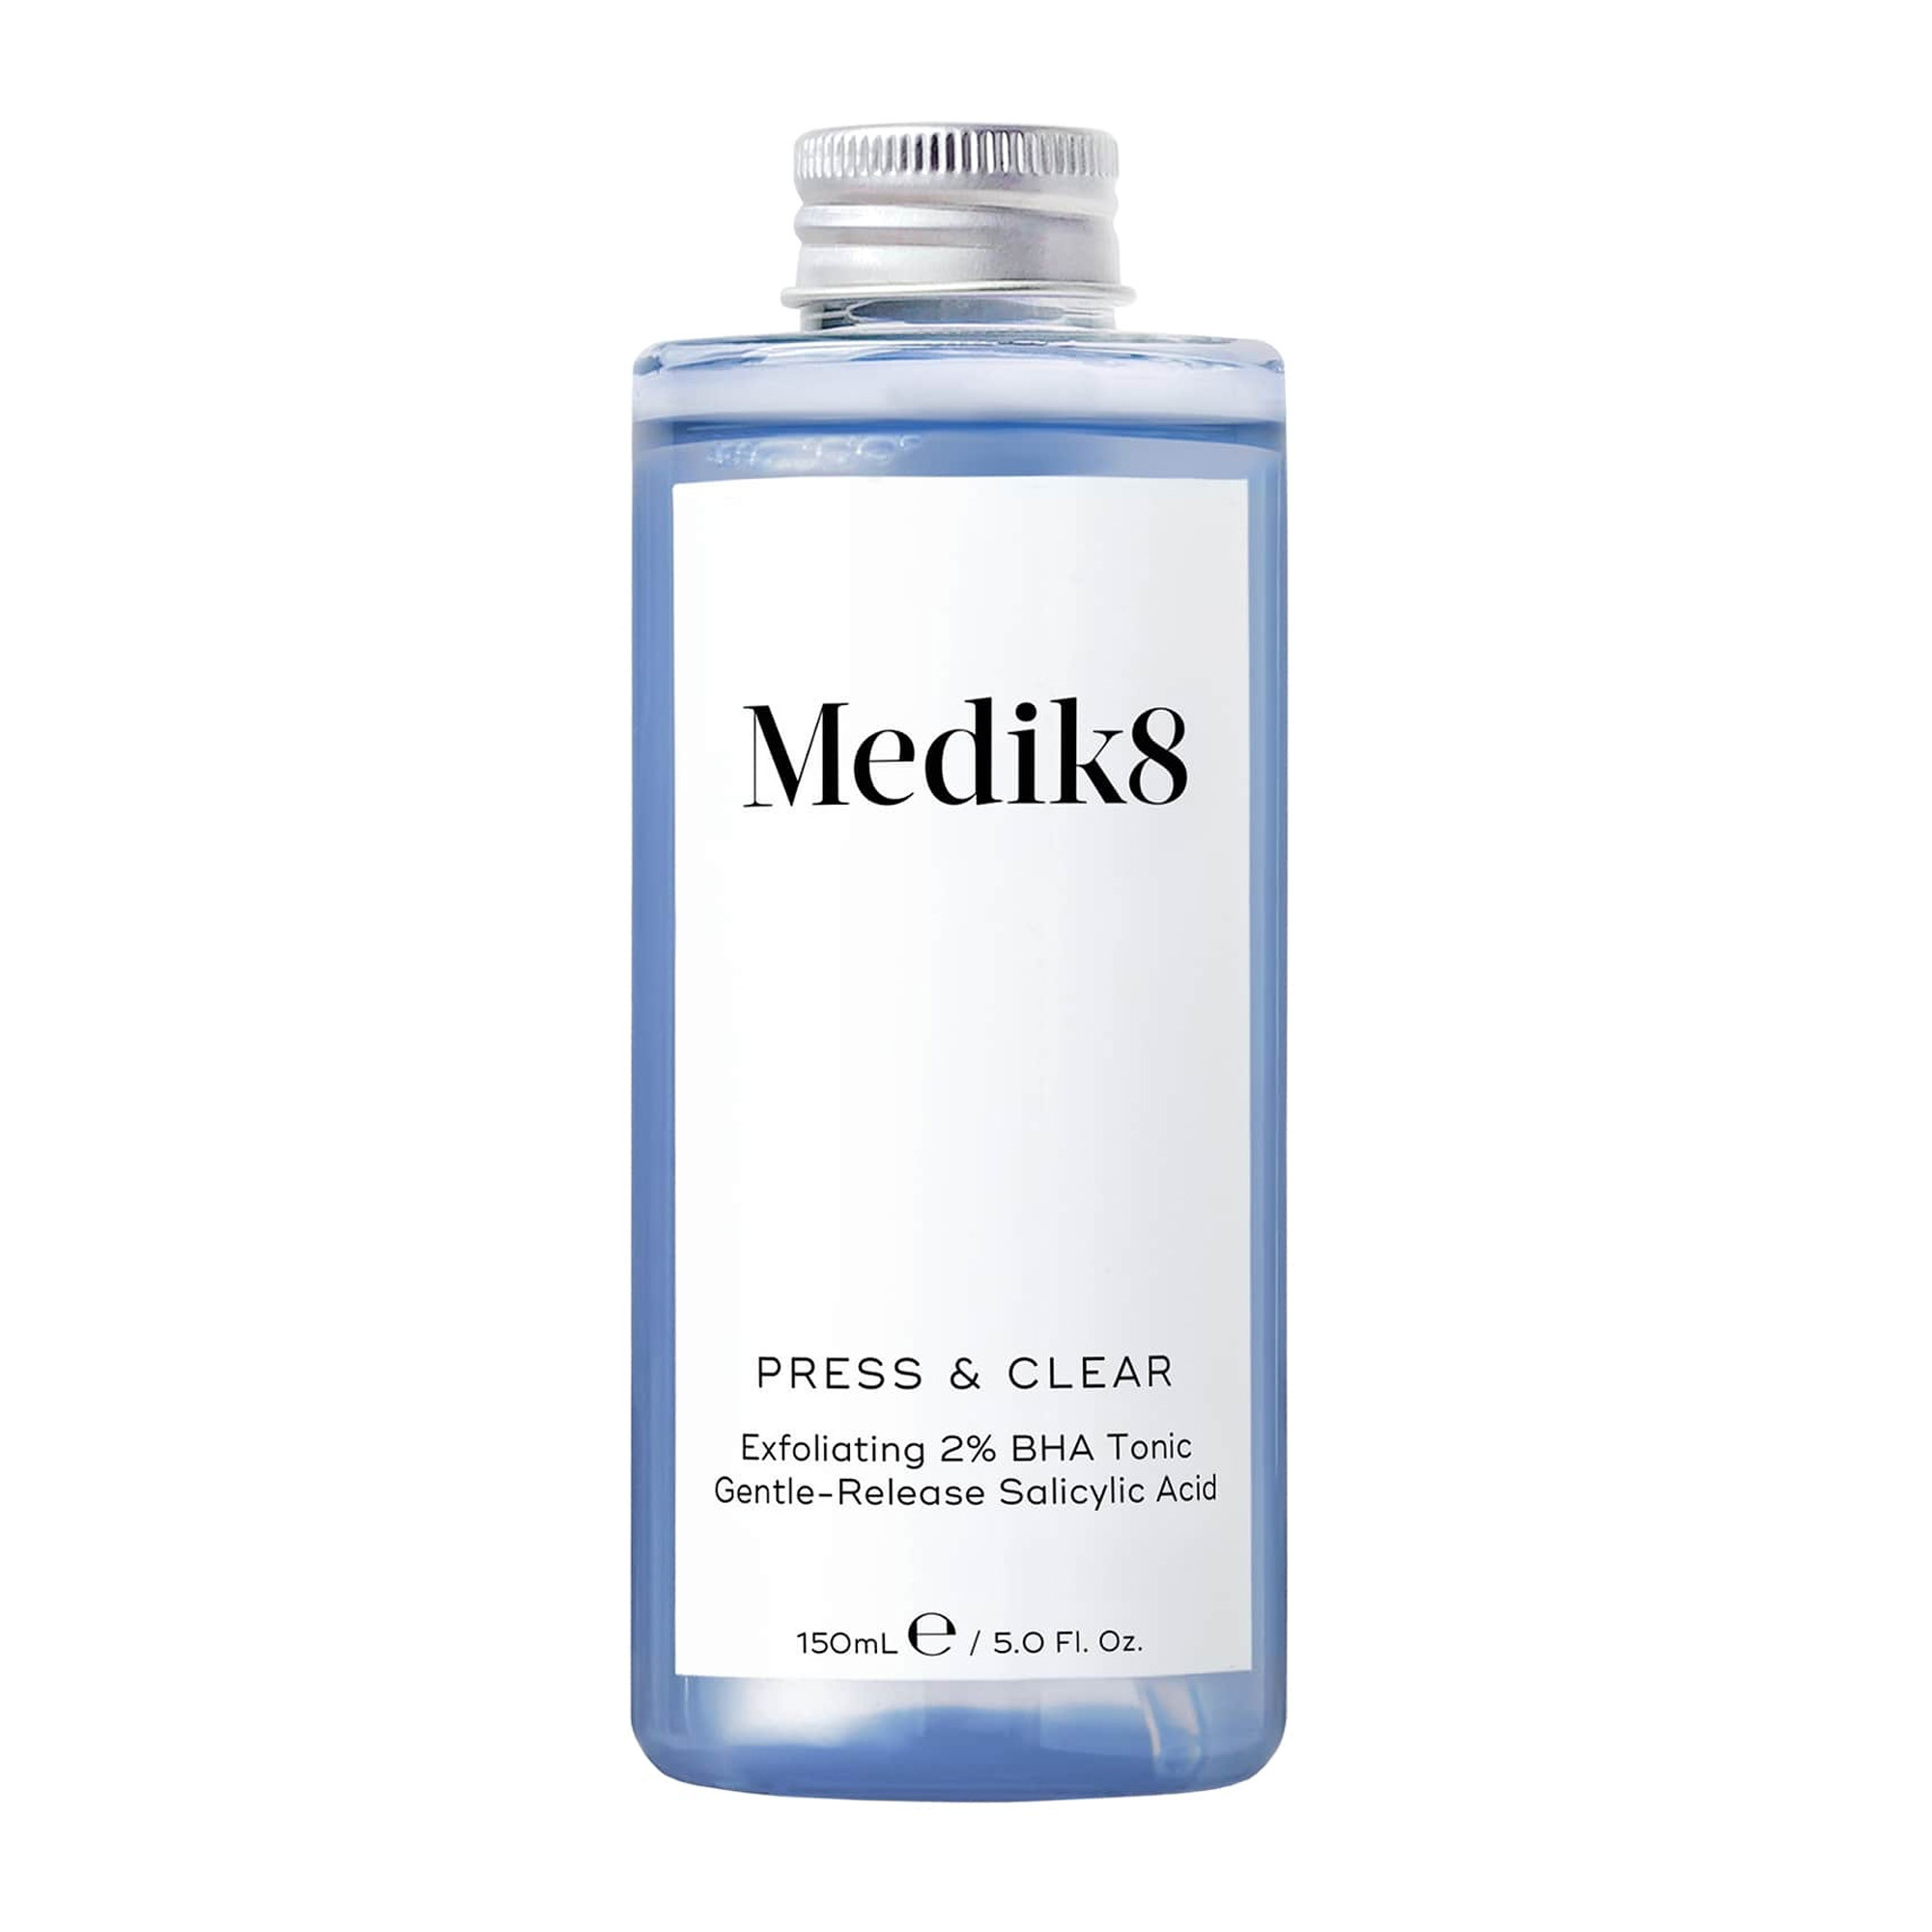 Medik8 ВНА-тоник с 2% инкапсулированной салициловой кислотой для проблемной кожи